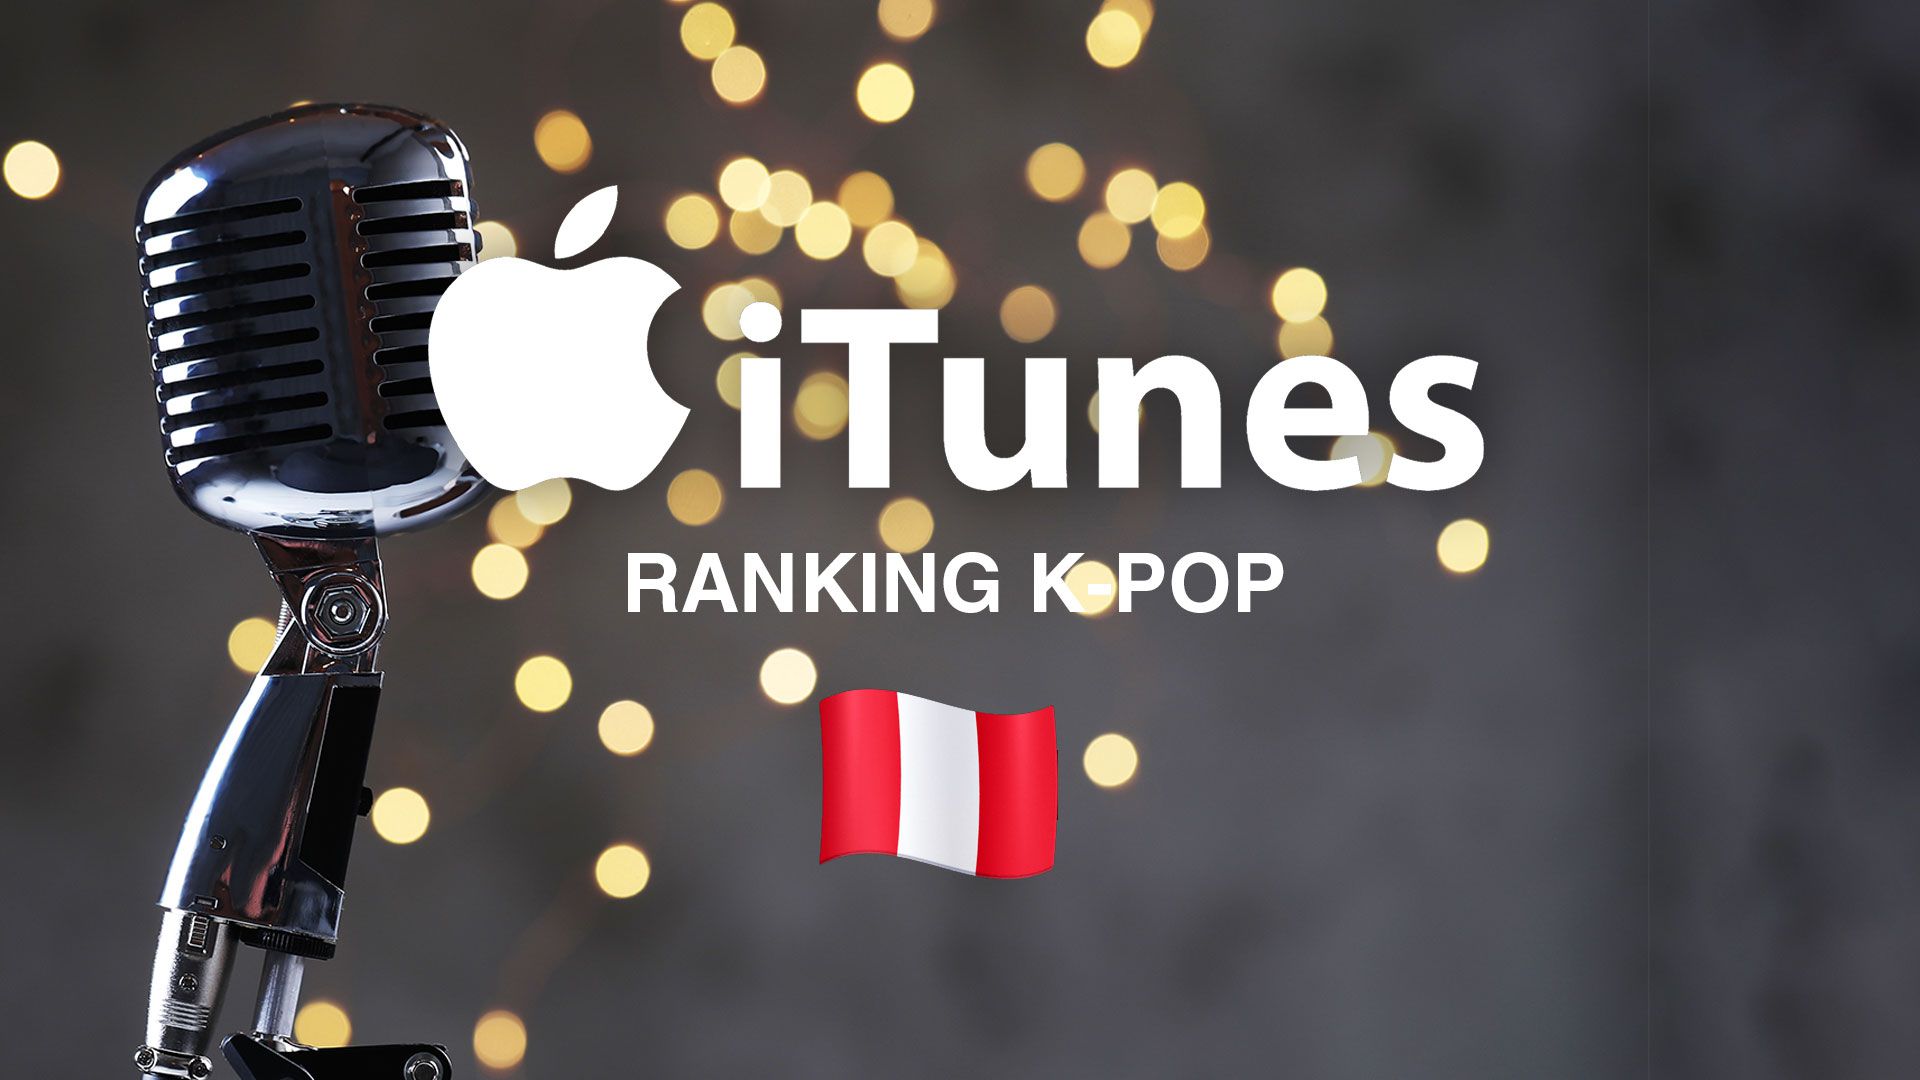 Los artistas que dominan el ranking de K-pop en iTunes Perú